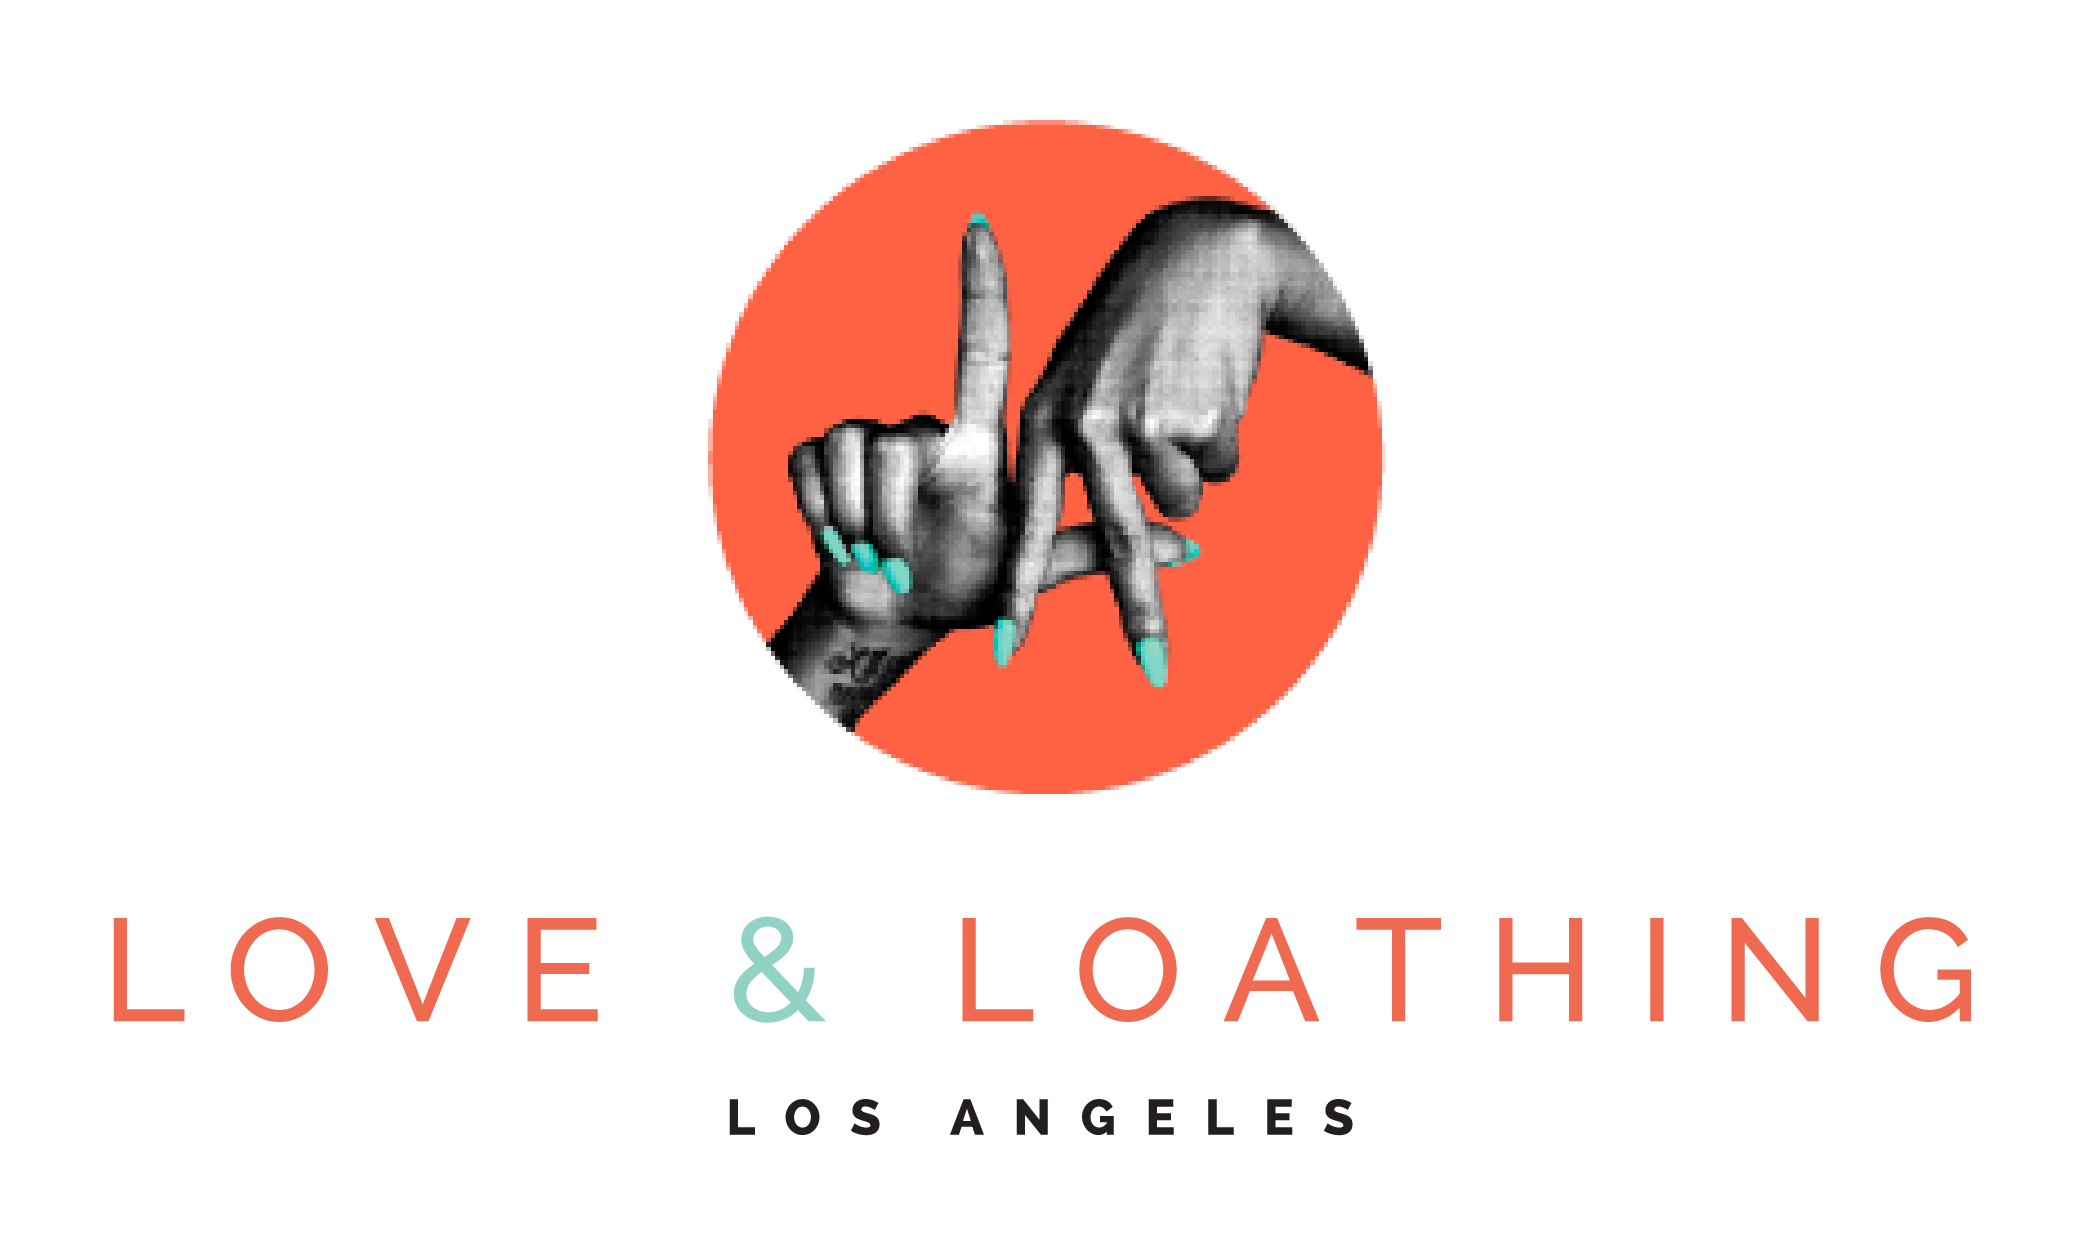 Love & Loathing Los Angeles